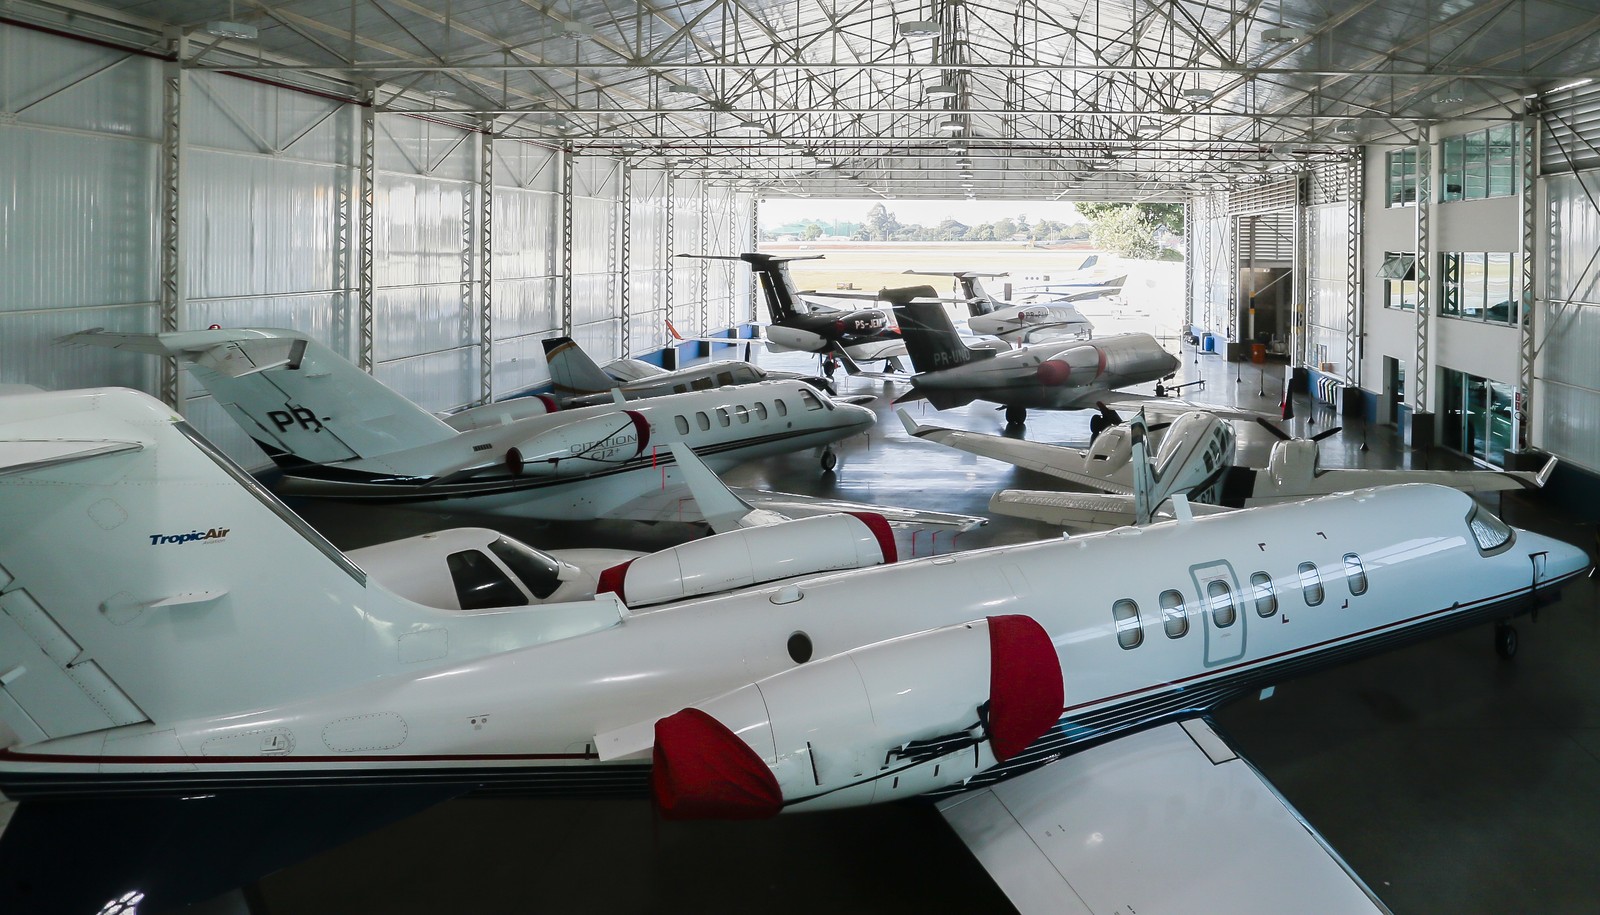 No Hangar da Tropic Air, aviões de milionários ficam disponíveis para afretamento, o que ajuda a reduzir os custos de manutenção desse privilégio pessoalAgência O Globo